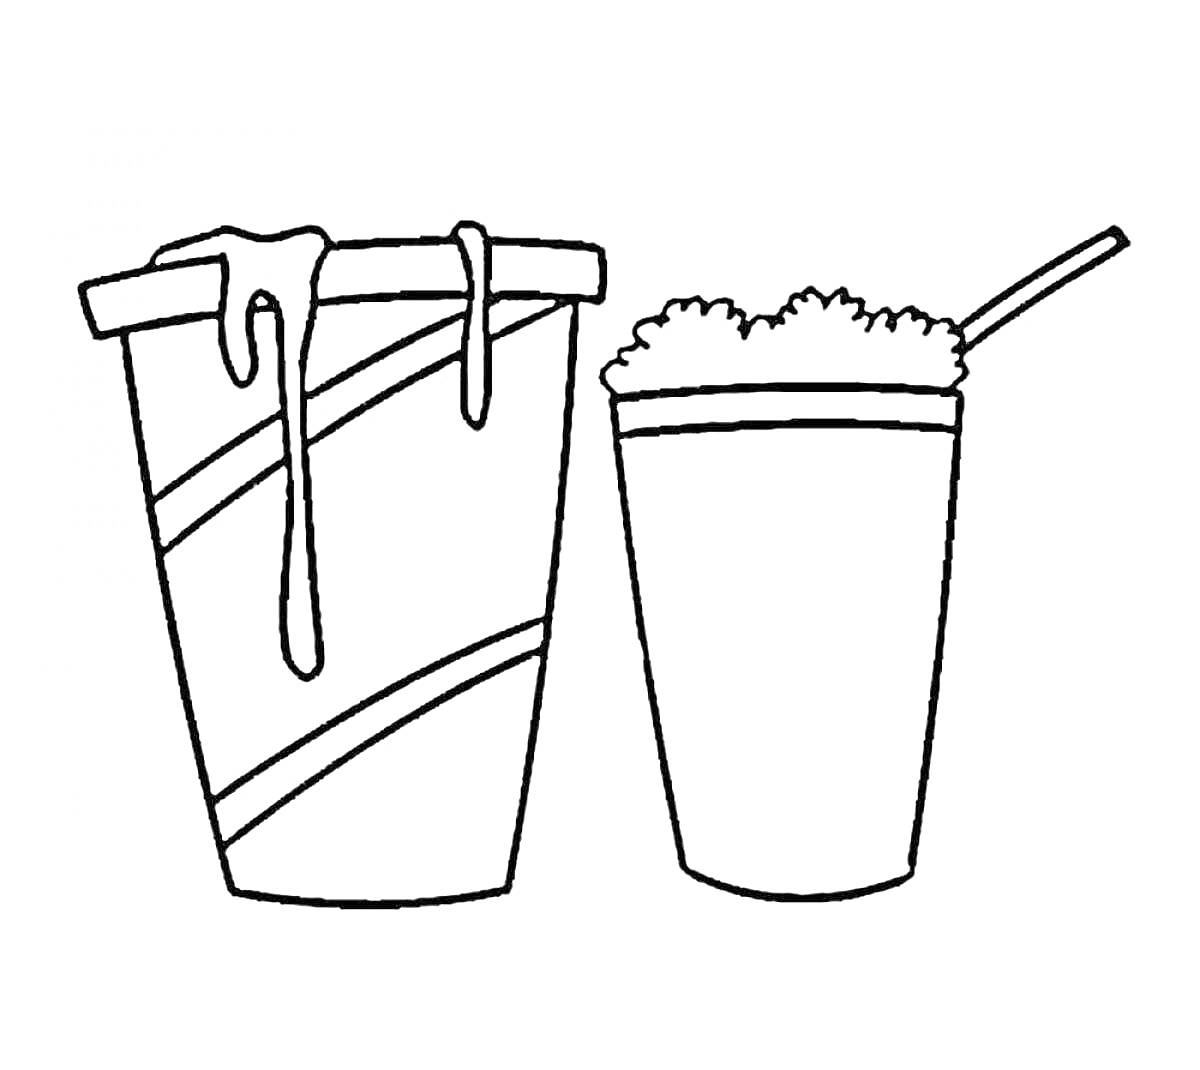 Раскраска Два стакана с разными напитками - стакан с напитком со льдом и стакан с пенным напитком